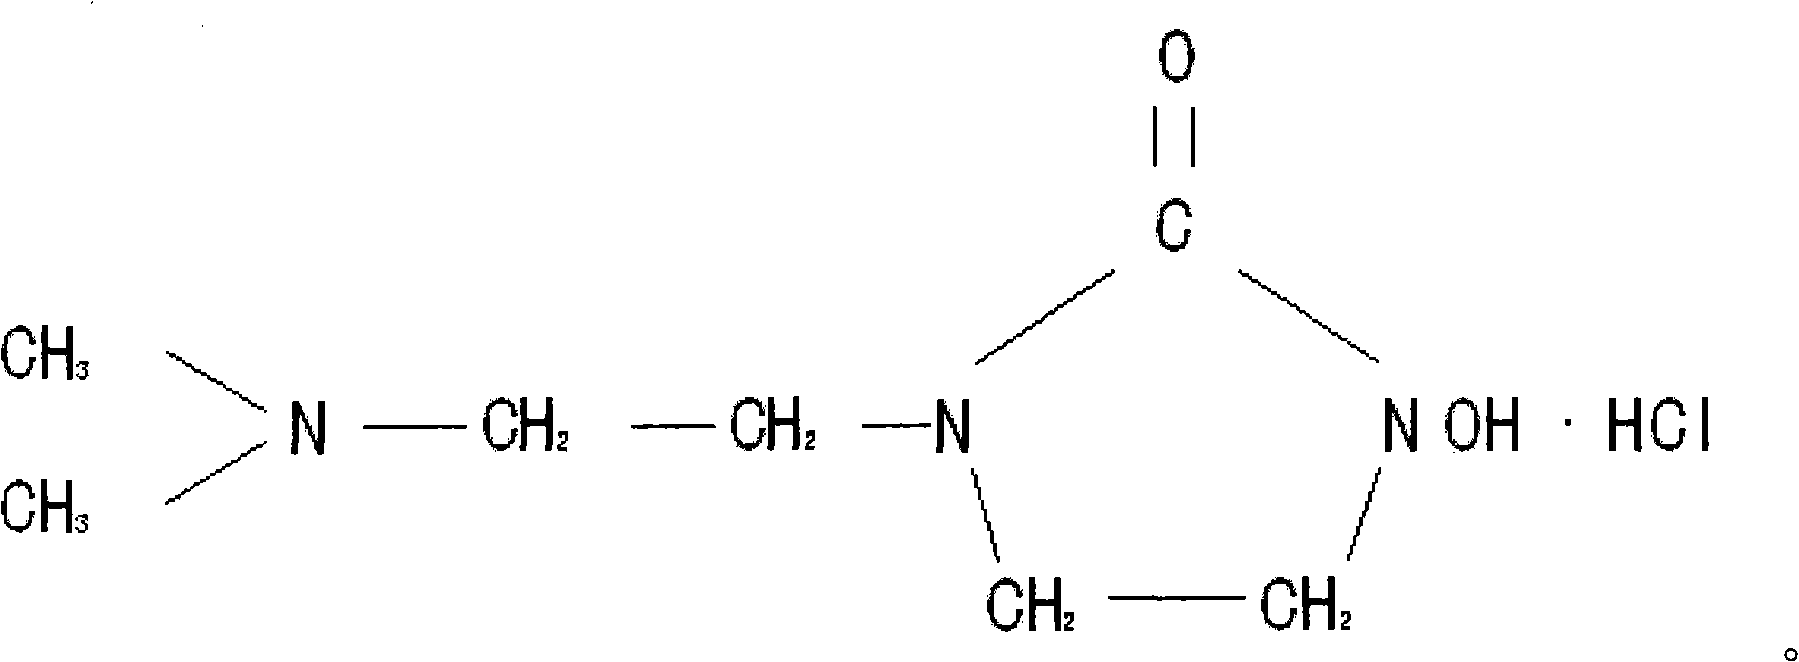 1 (dimethylamino) ethyl, 3-hydroxy-imidazoline hydrochloride and preparation method thereof